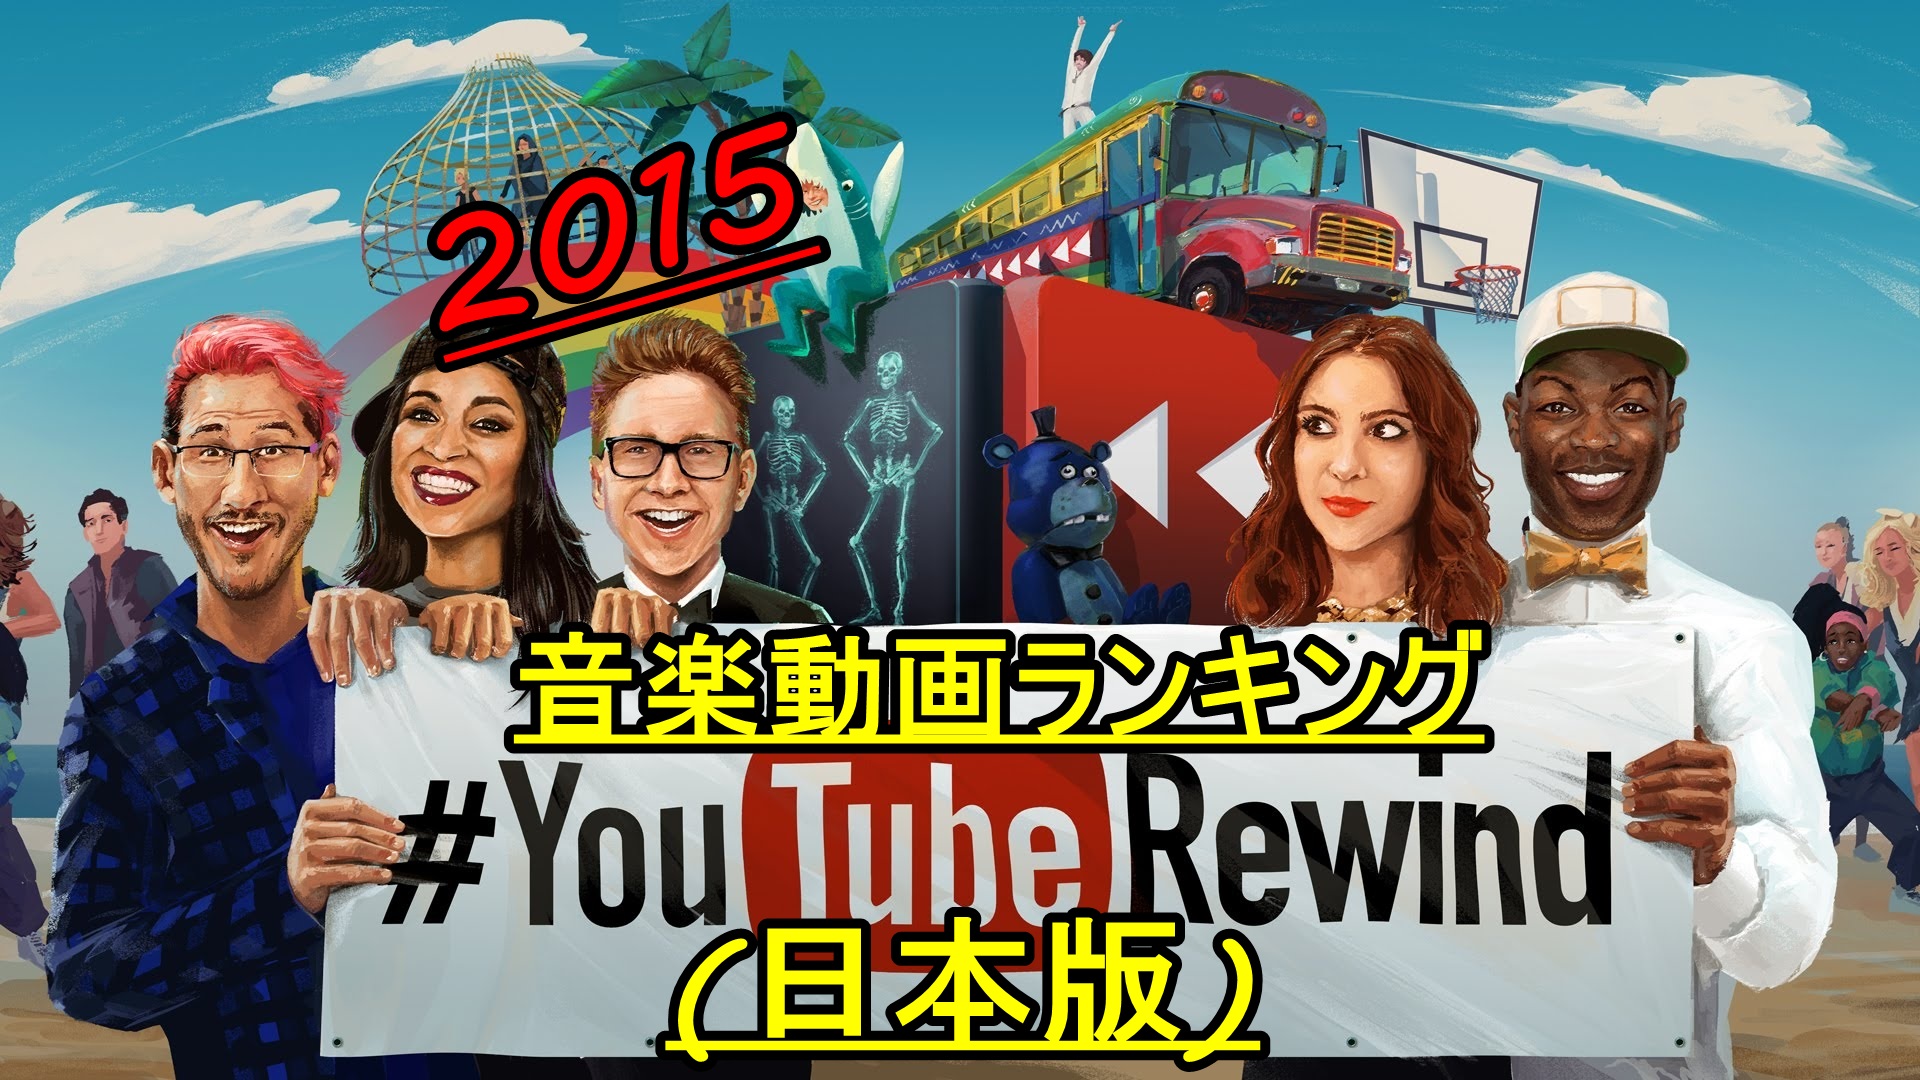 2015年YouTube人気音楽動画ランキング(日本版)TOP50!